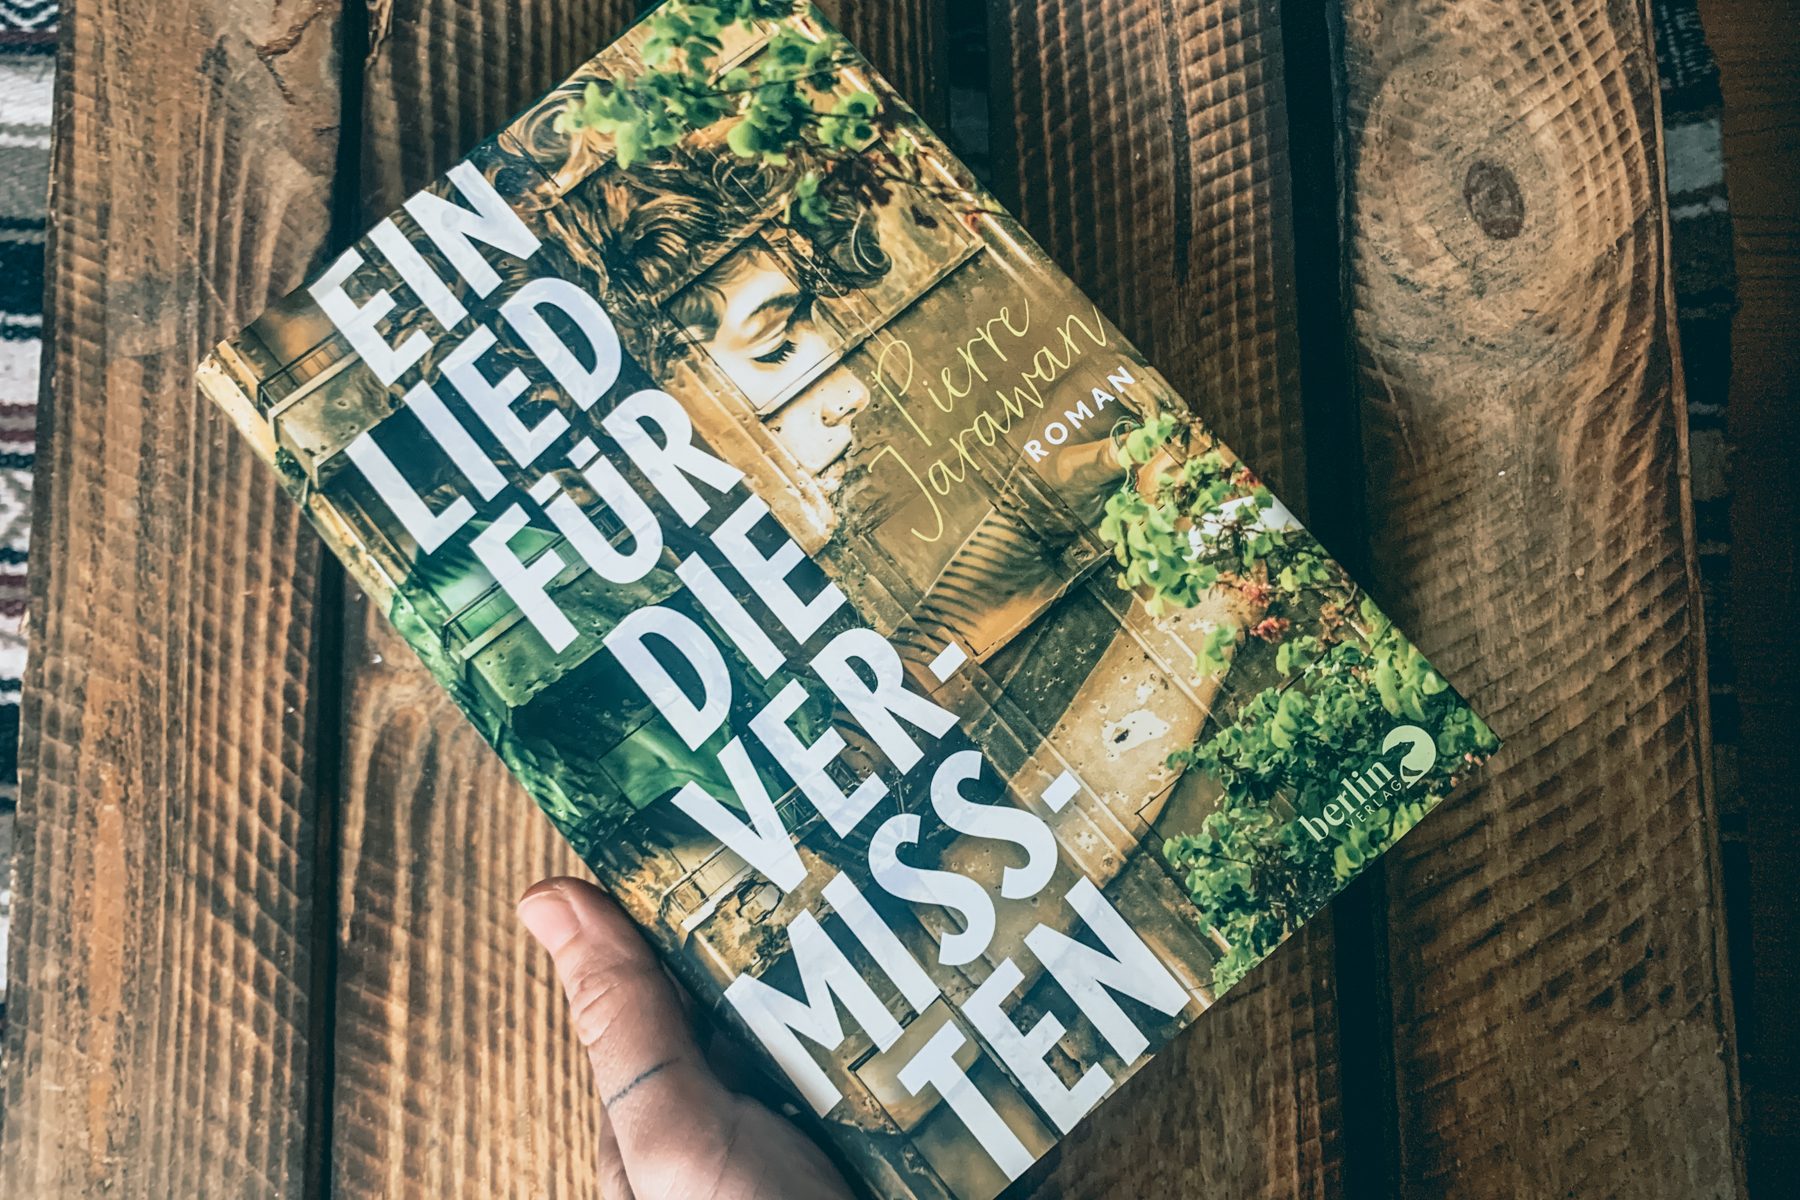 Unsere Redakteurin ist großer Fan von Pierres Büchern. – ©wunderland media GmbH